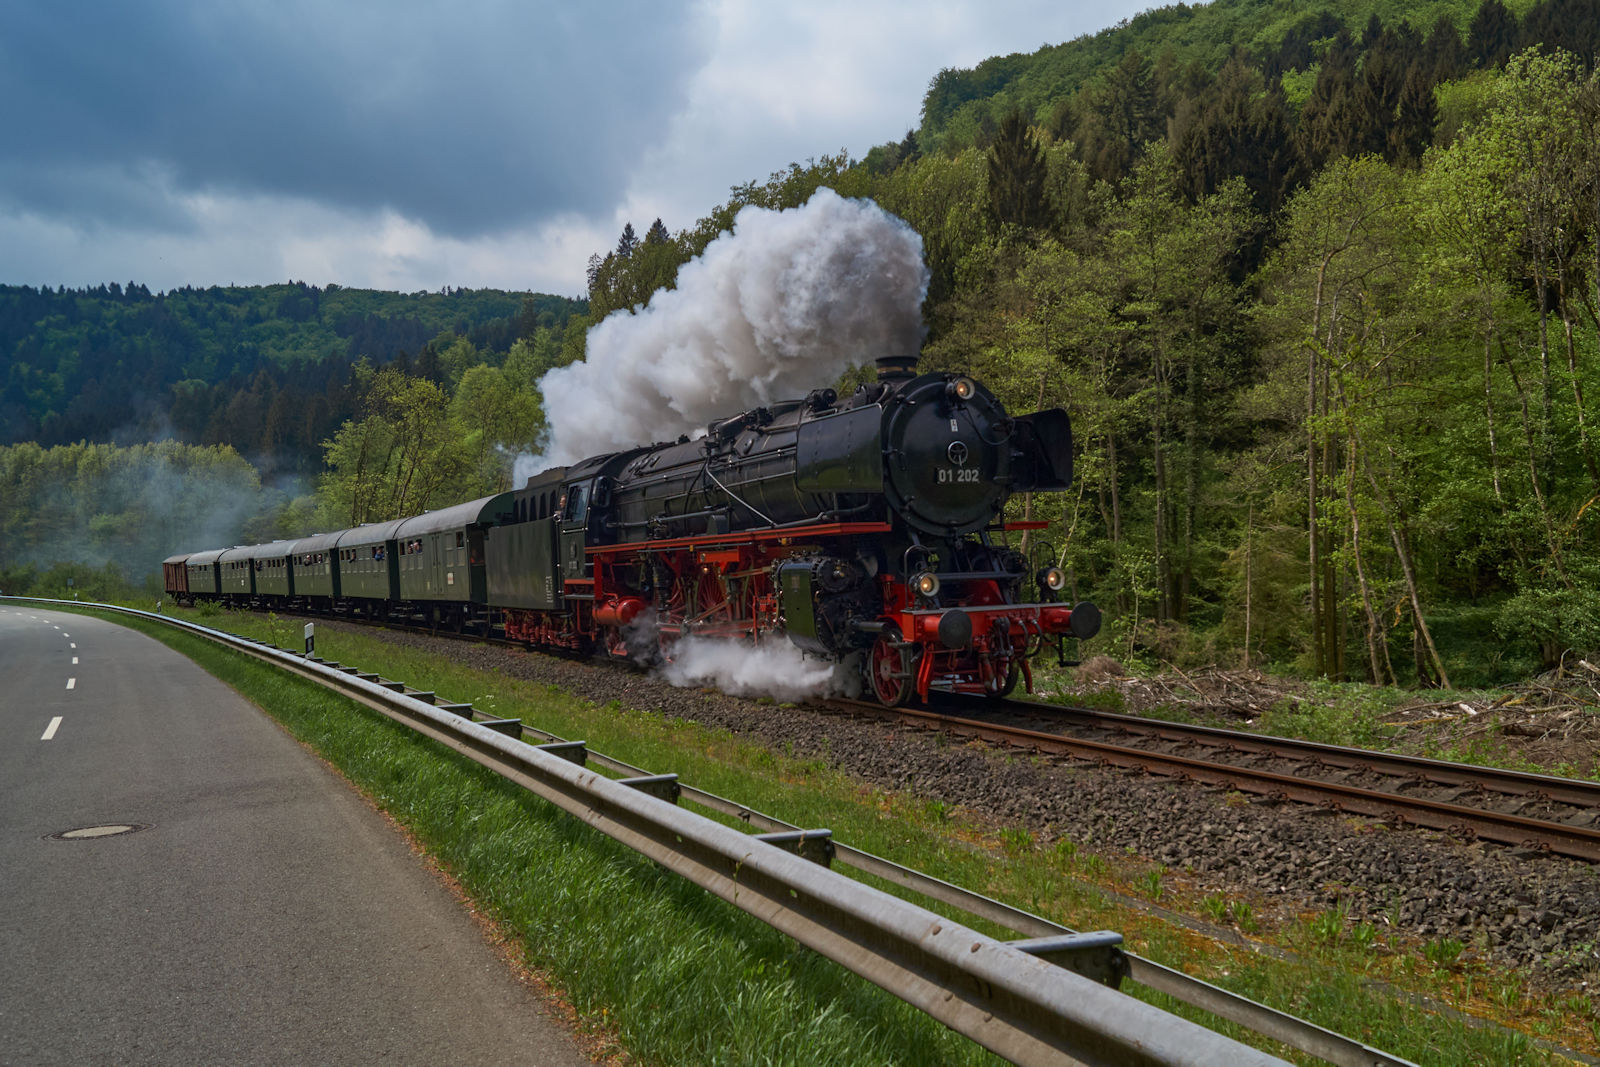 Durch die Eifel nach Gerolstein ging es am 01.05.2018 mit DPE 61936 der von 01 202 gezogen wurde. Hier befand sich der Zug kurz vor dem Bahnhof Daufenbach.